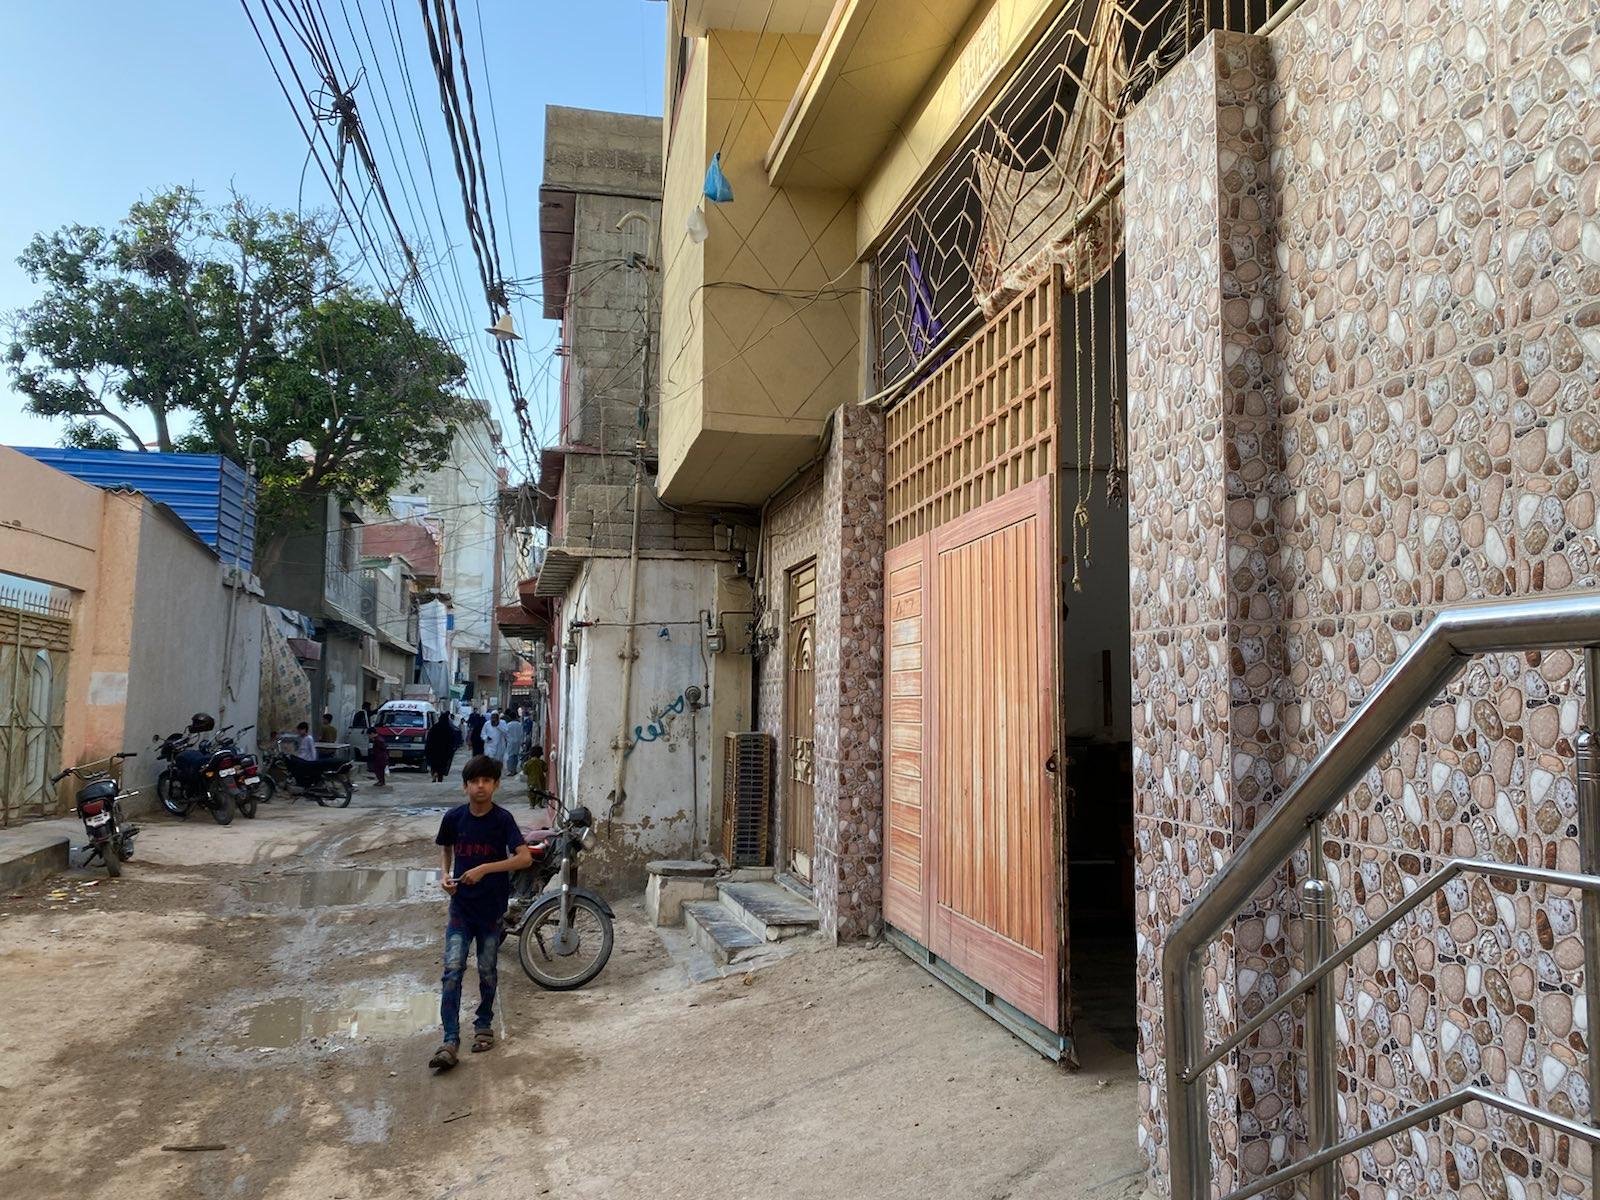  Karači, soseska Hadži, kjer živi revno prebivalstvo. V ozkih uličicah so skladišča za rabljeni tekstil, od koder se je »oglasil« tudi Oštrov nahrbtnik. Foto: Adil Jawad 